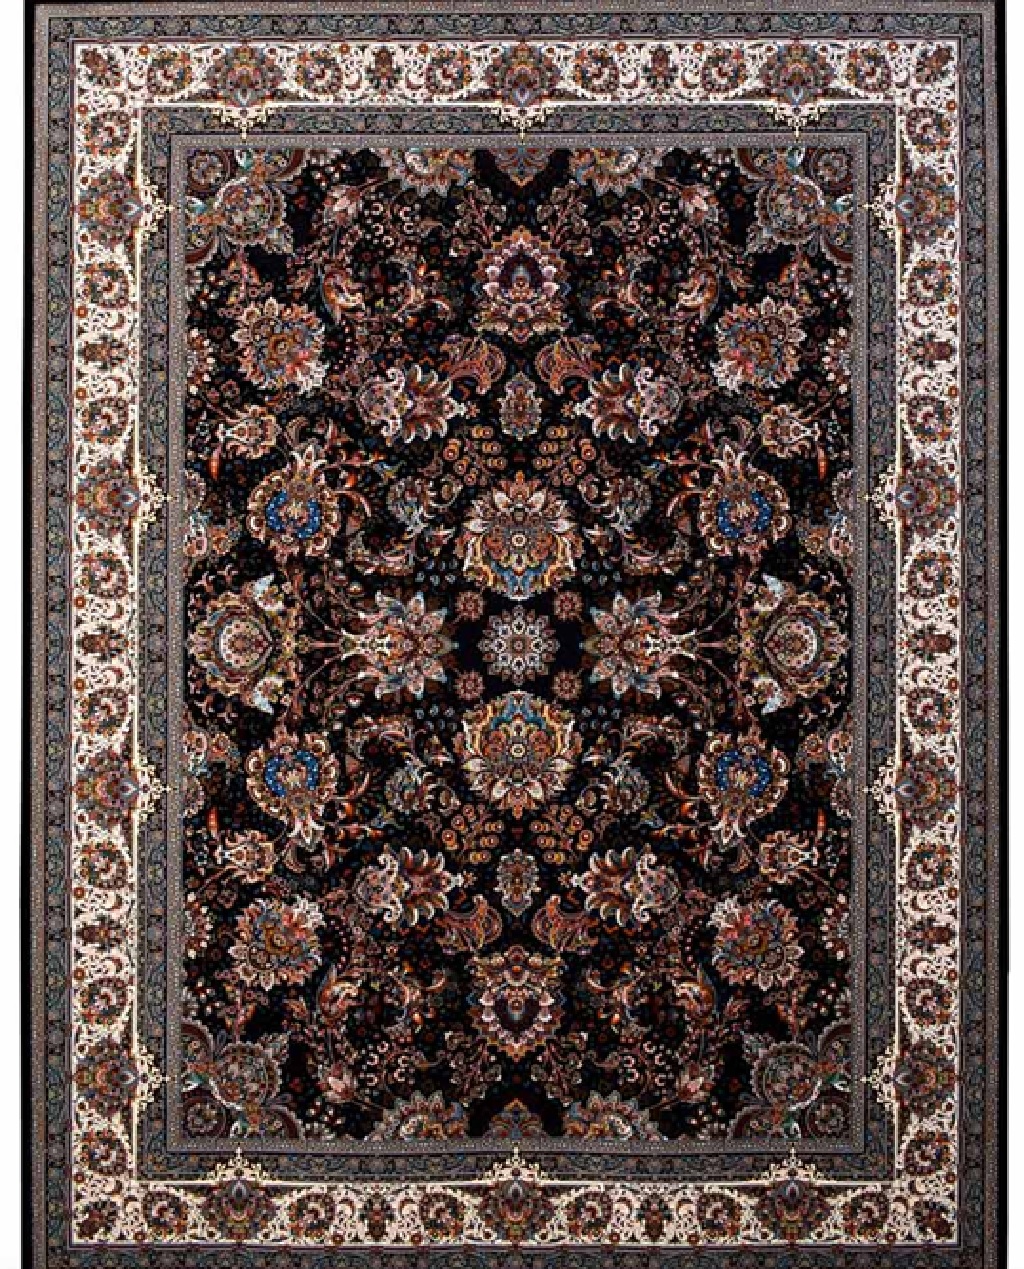 شرکت فرش کلاسیک چگونه این فرش را تولید می کند؟